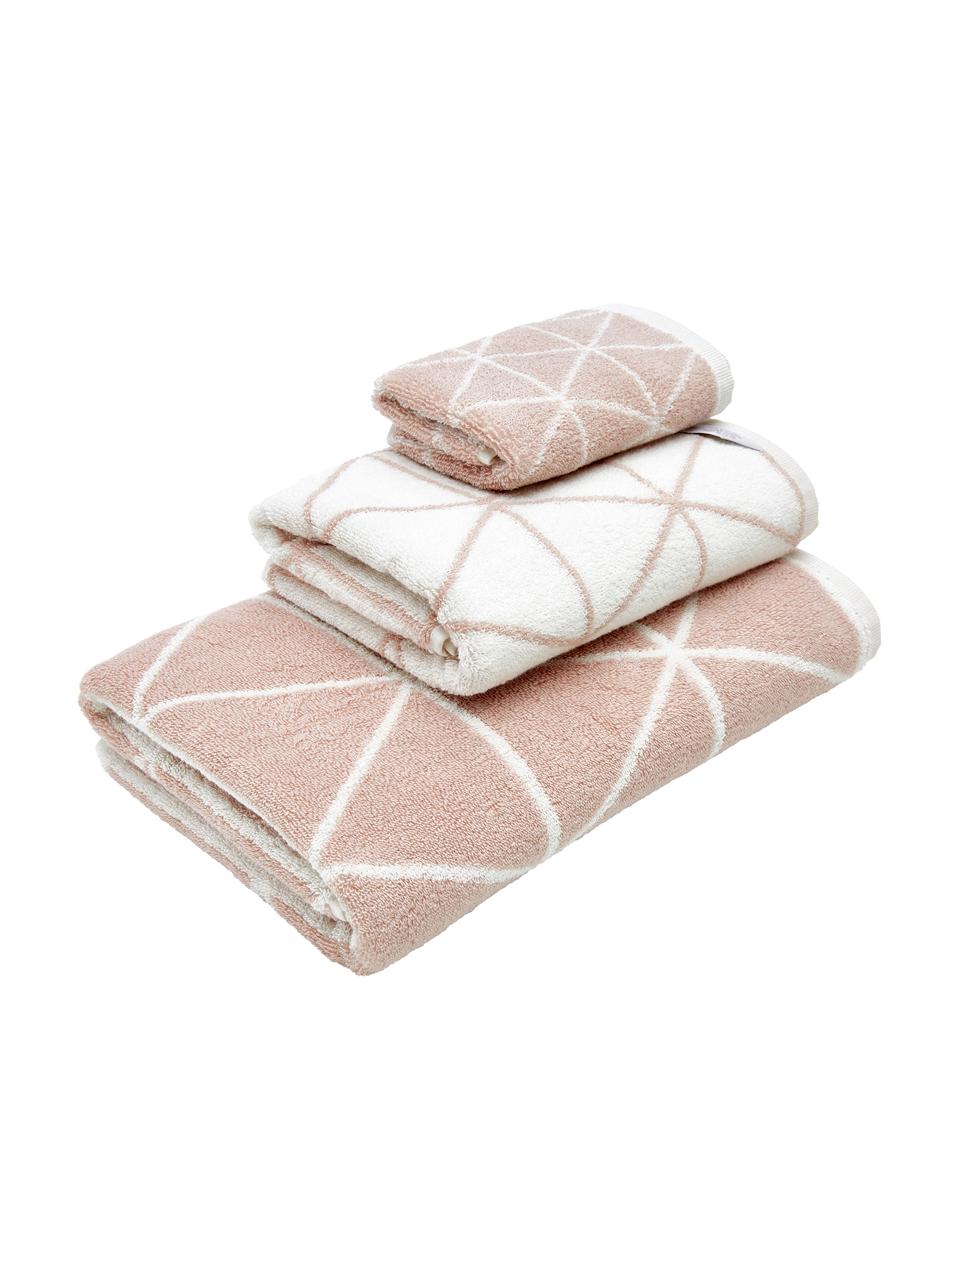 Komplet dwustronnych ręczników Elina, 3 elem., Blady różowy & kremowobiały, we wzór, Komplet z różnymi rozmiarami